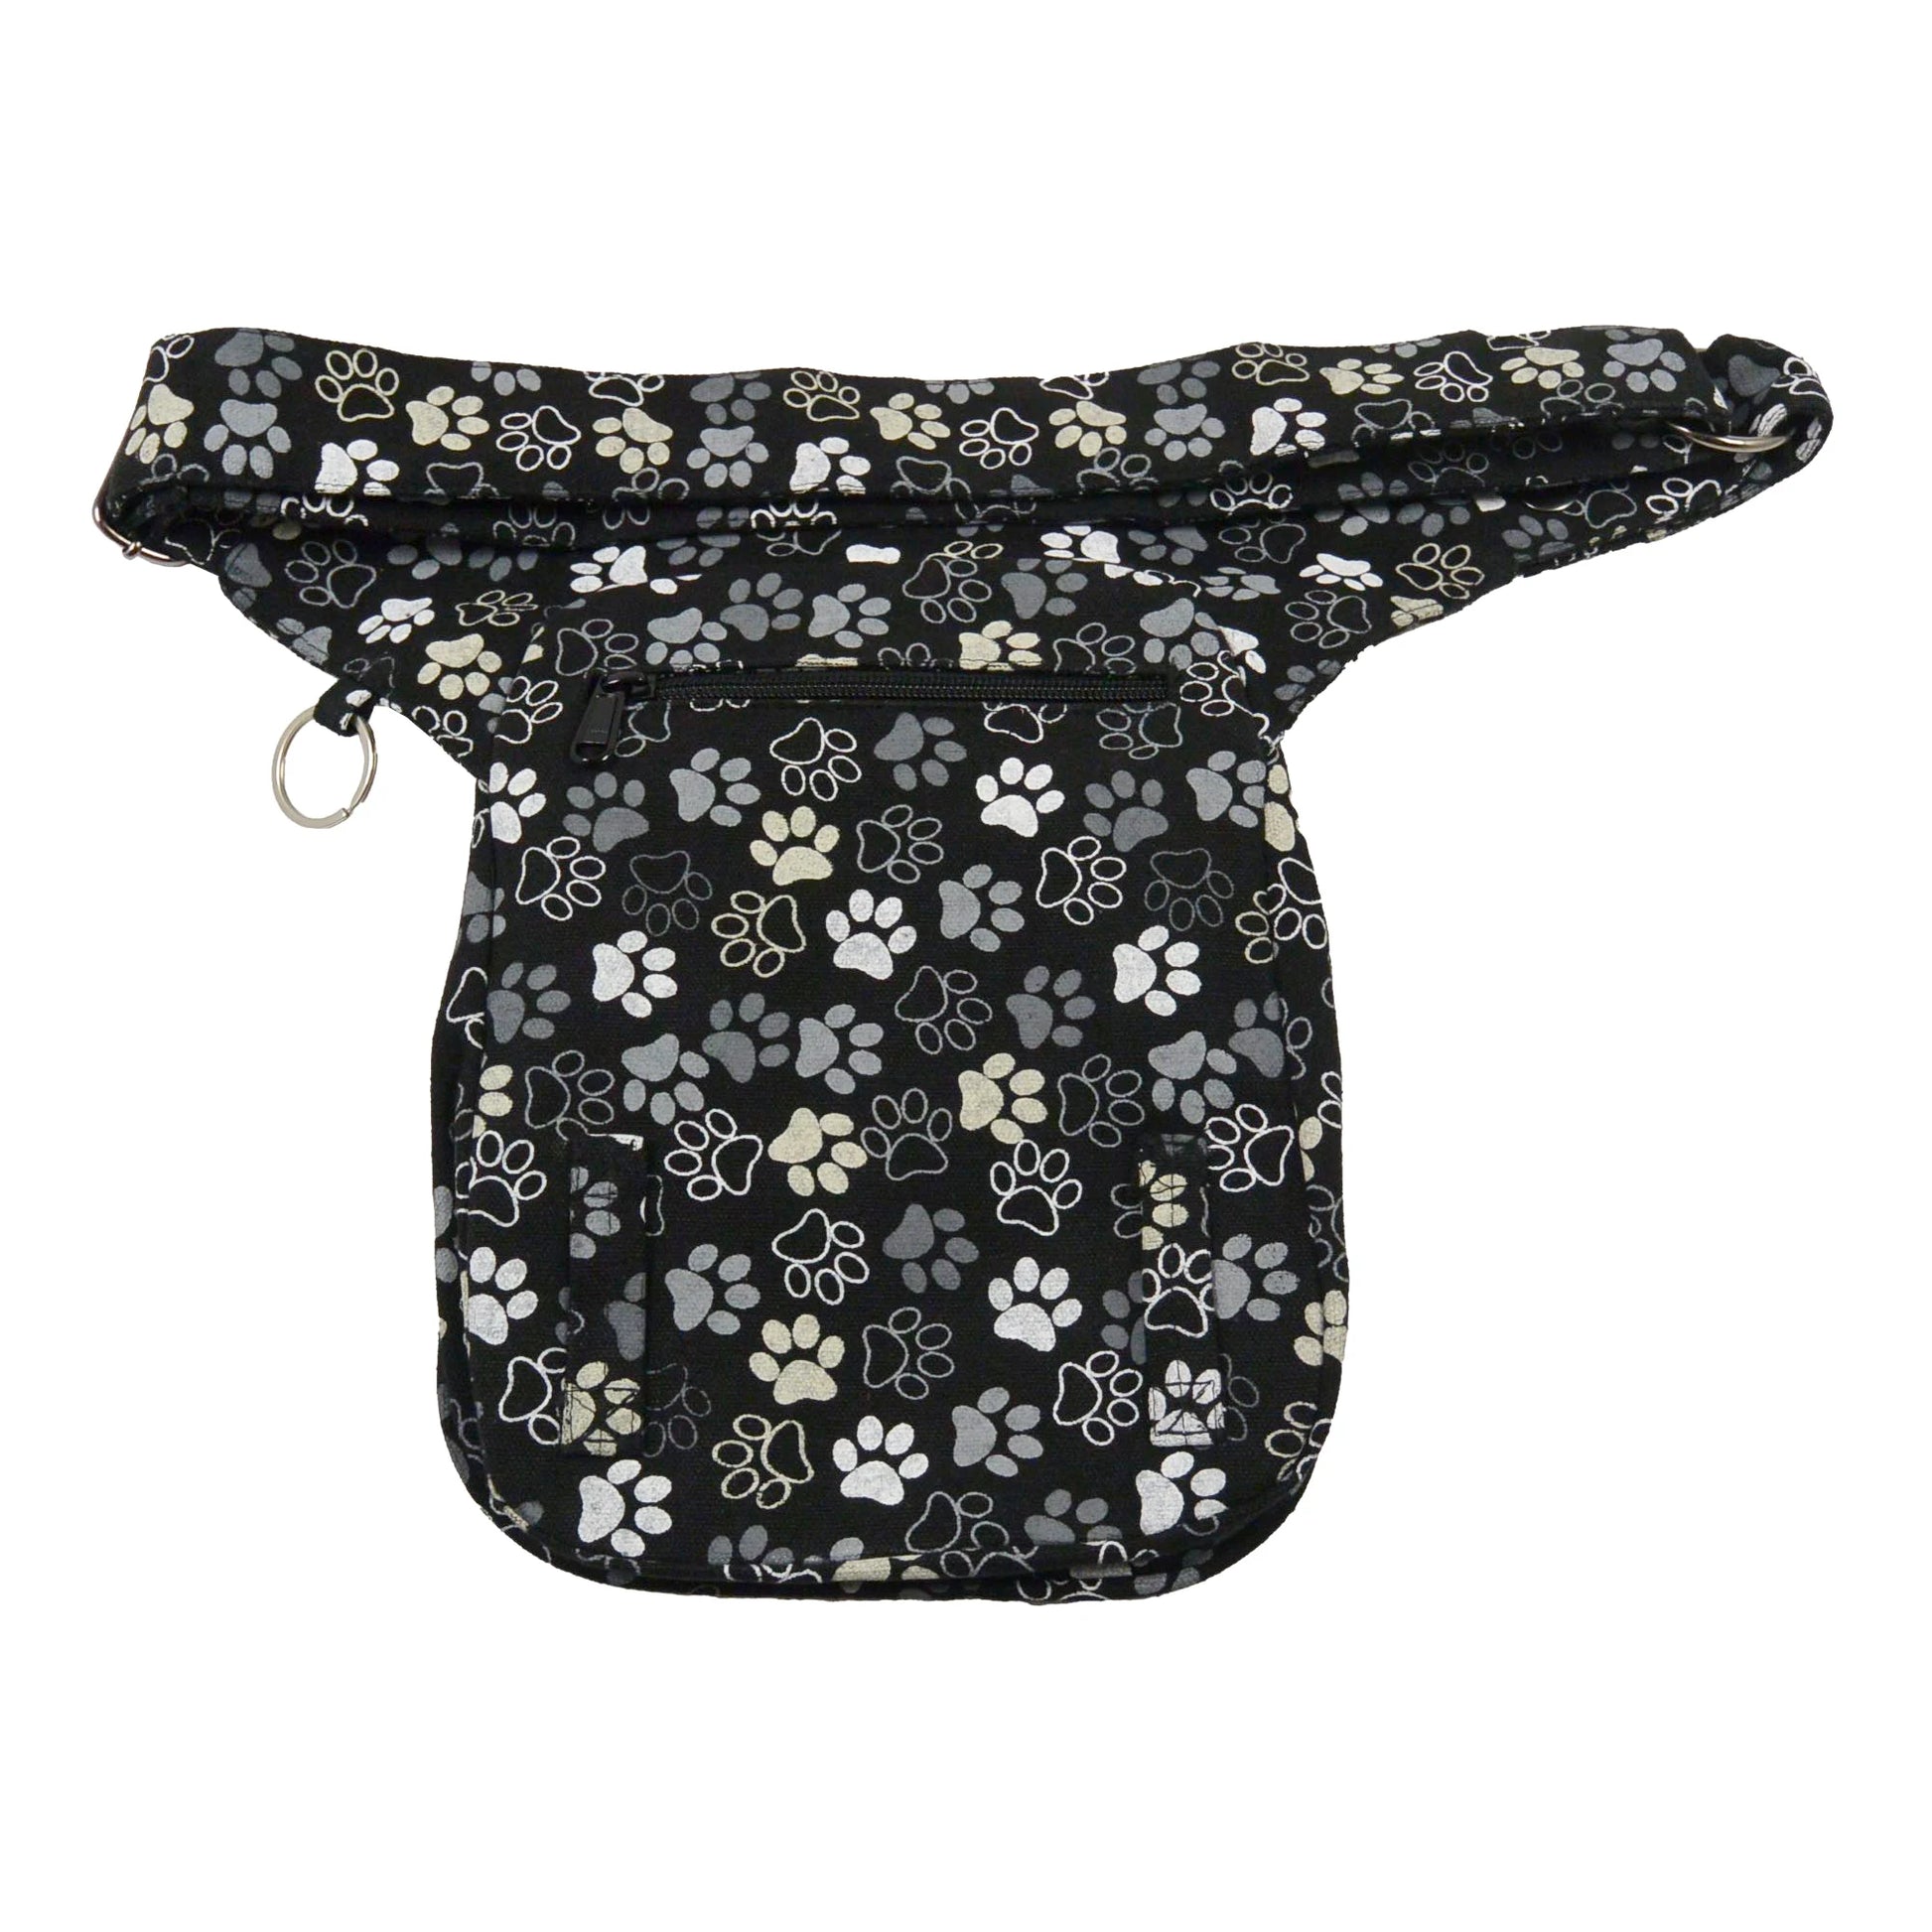 Gassi-Tasche, Hüfttasche aus Canvas Schwarz mit Hundepfoten Motiven besitzt ein Reißverschlussfach auf der Rückseite.